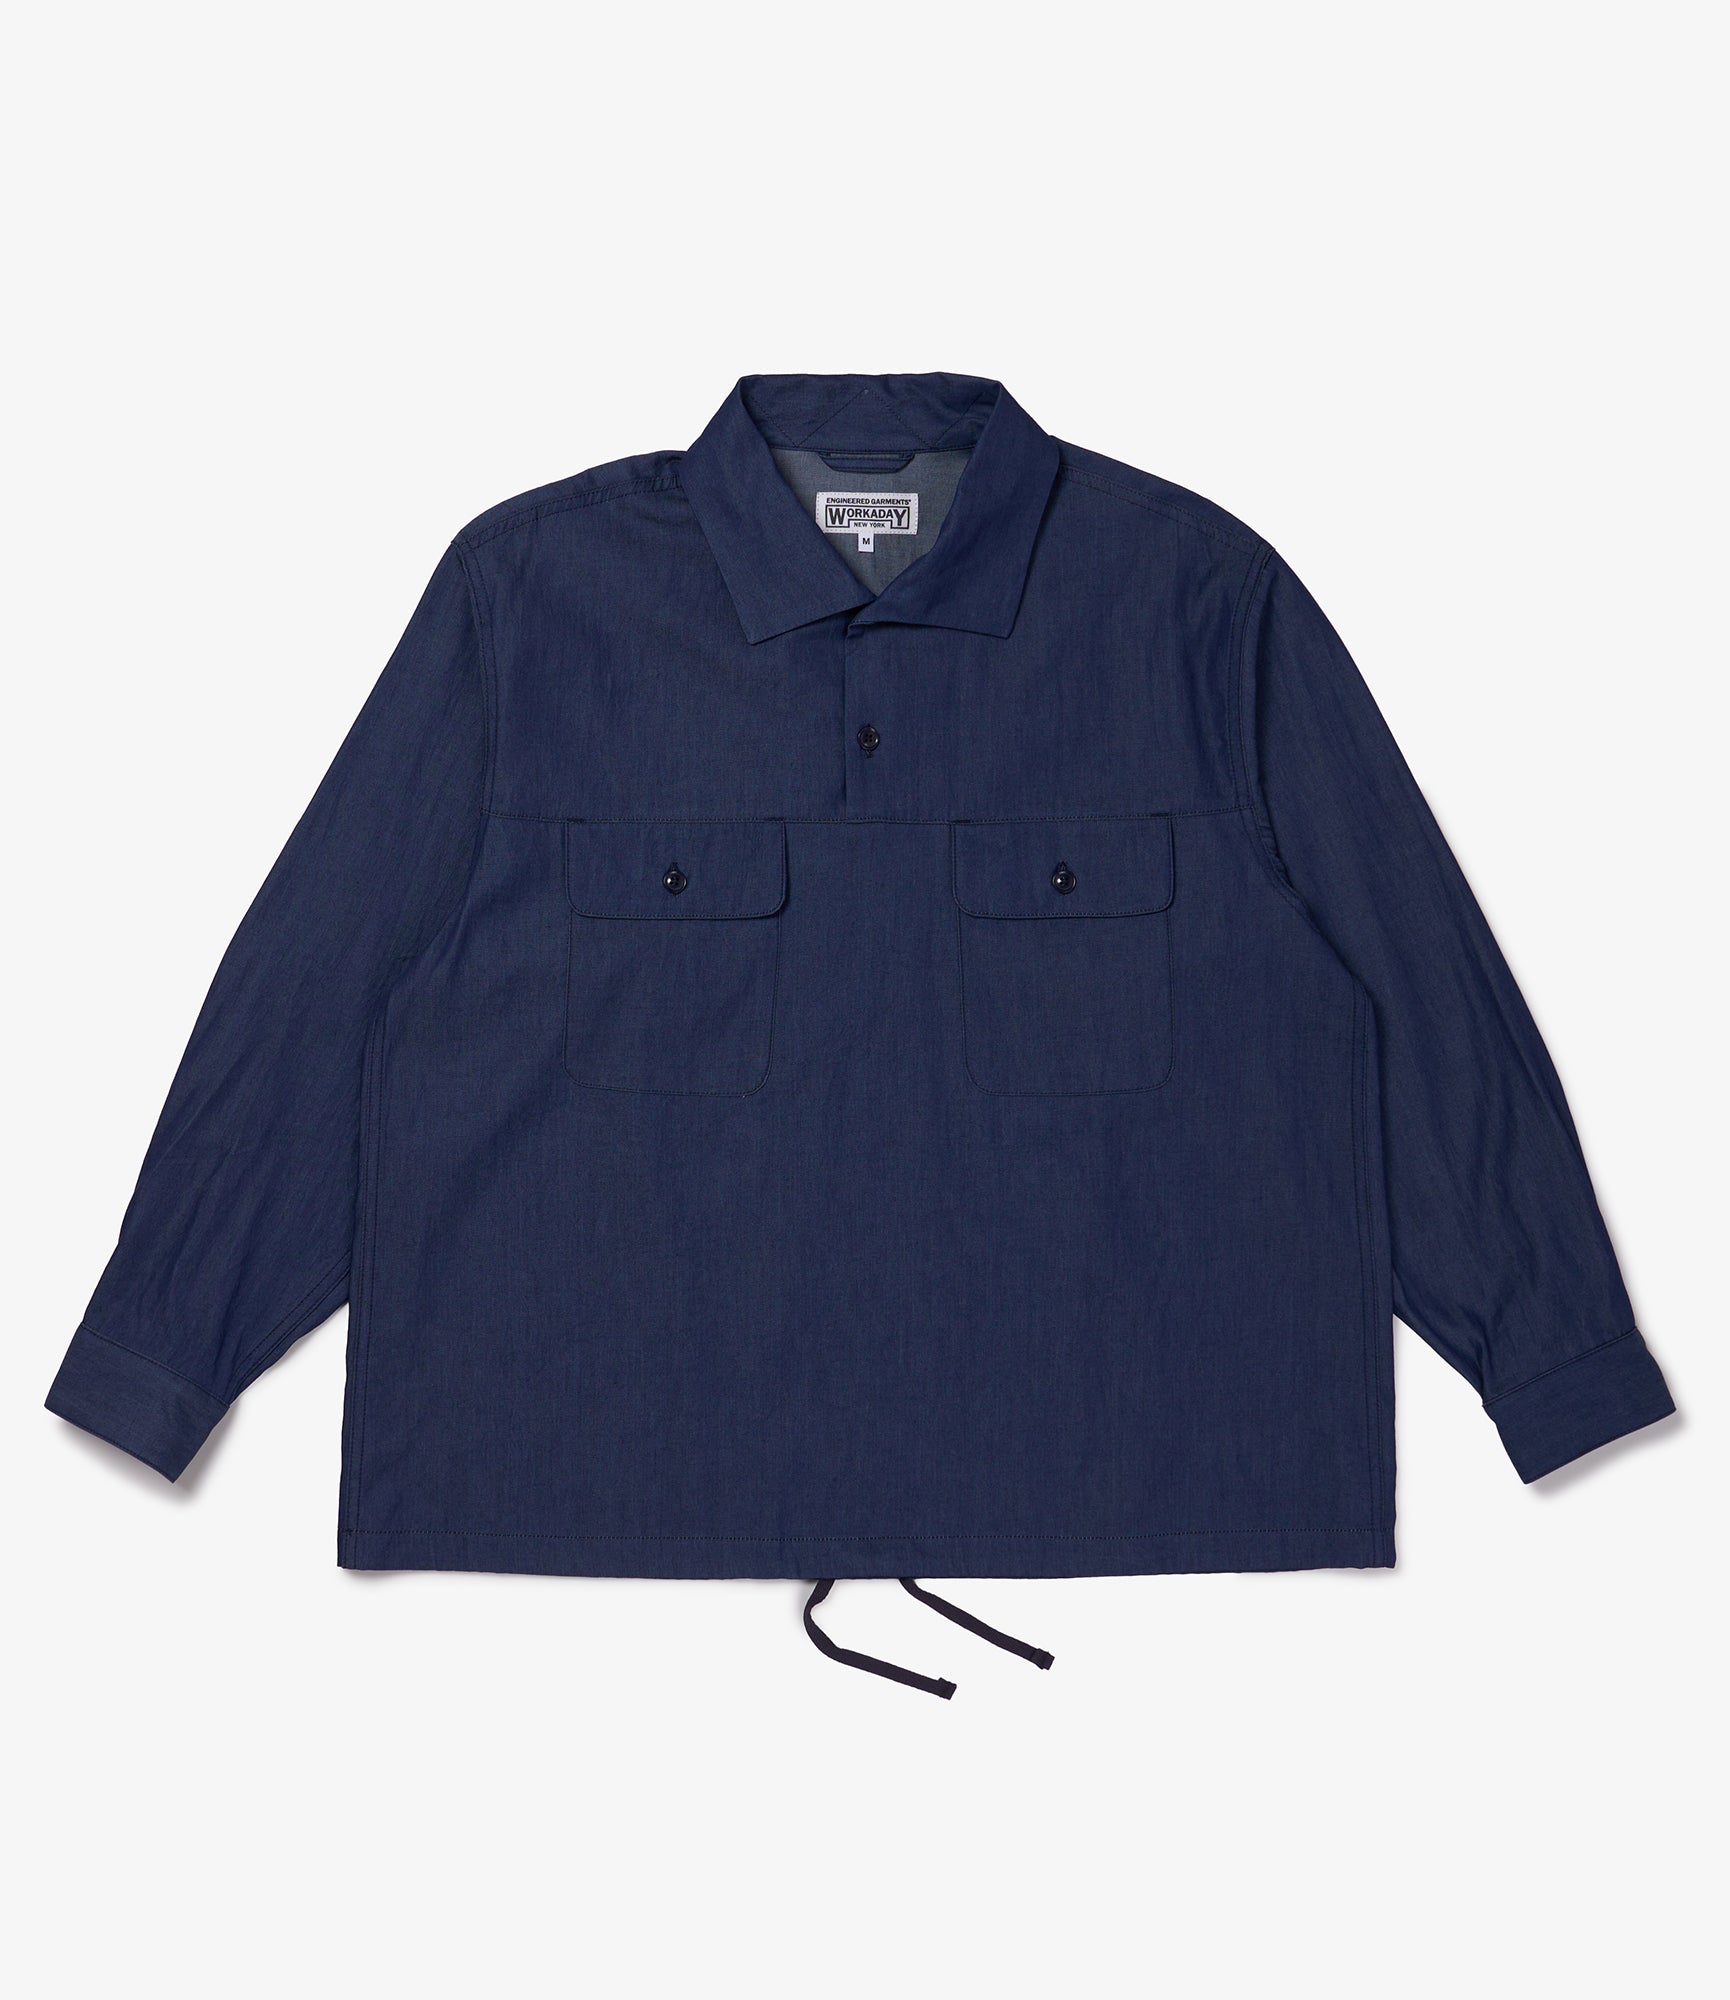 Jumper Shirt - Indigo 4.5 oz Denim Shirting